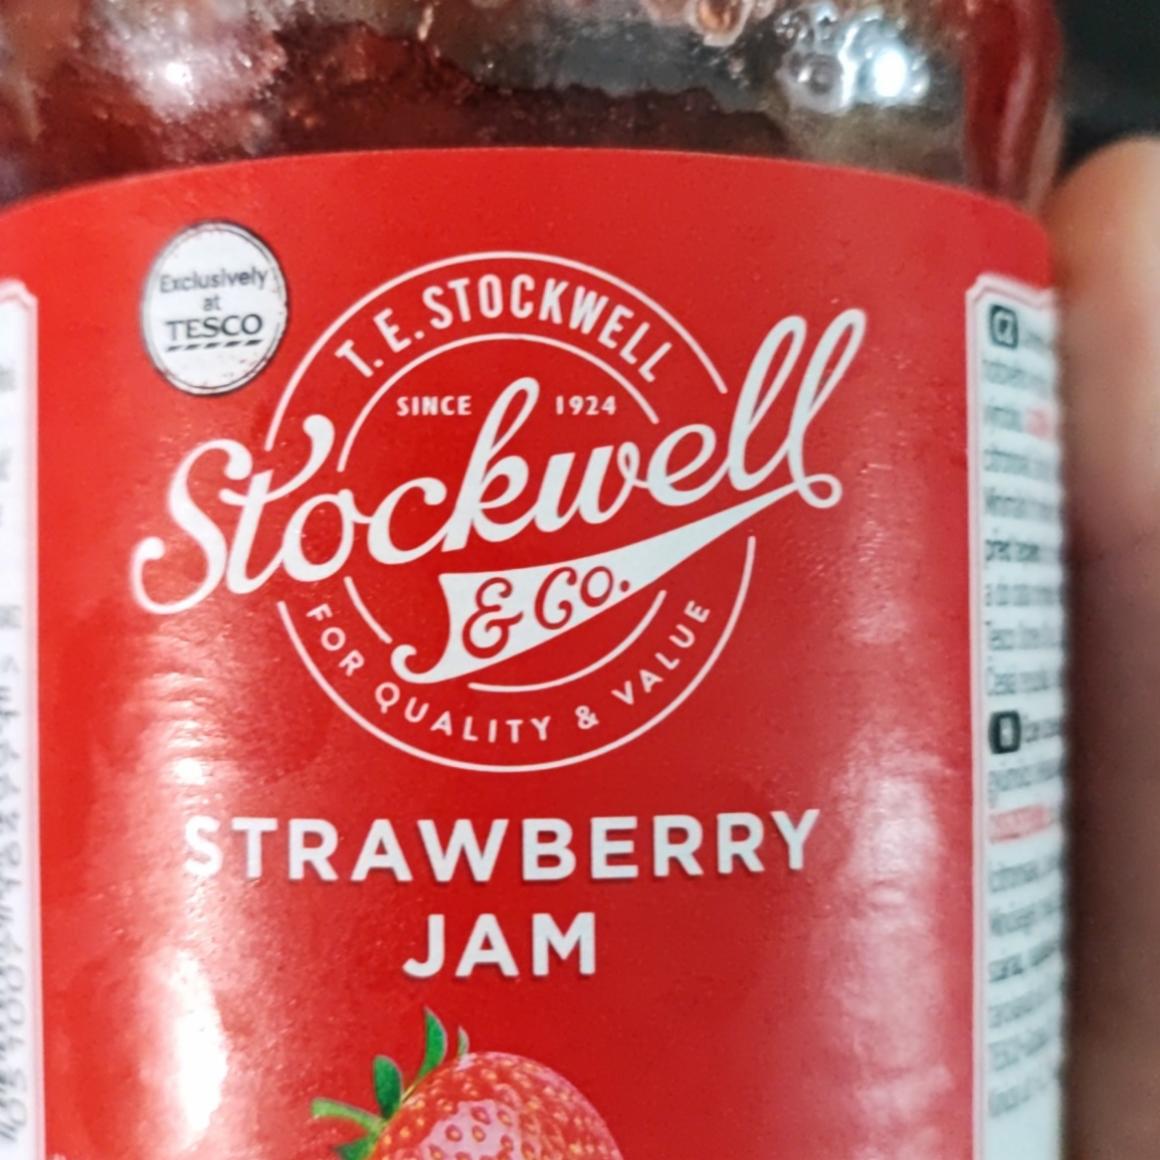 Fotografie - Strawberry jam Stockwell & Co.